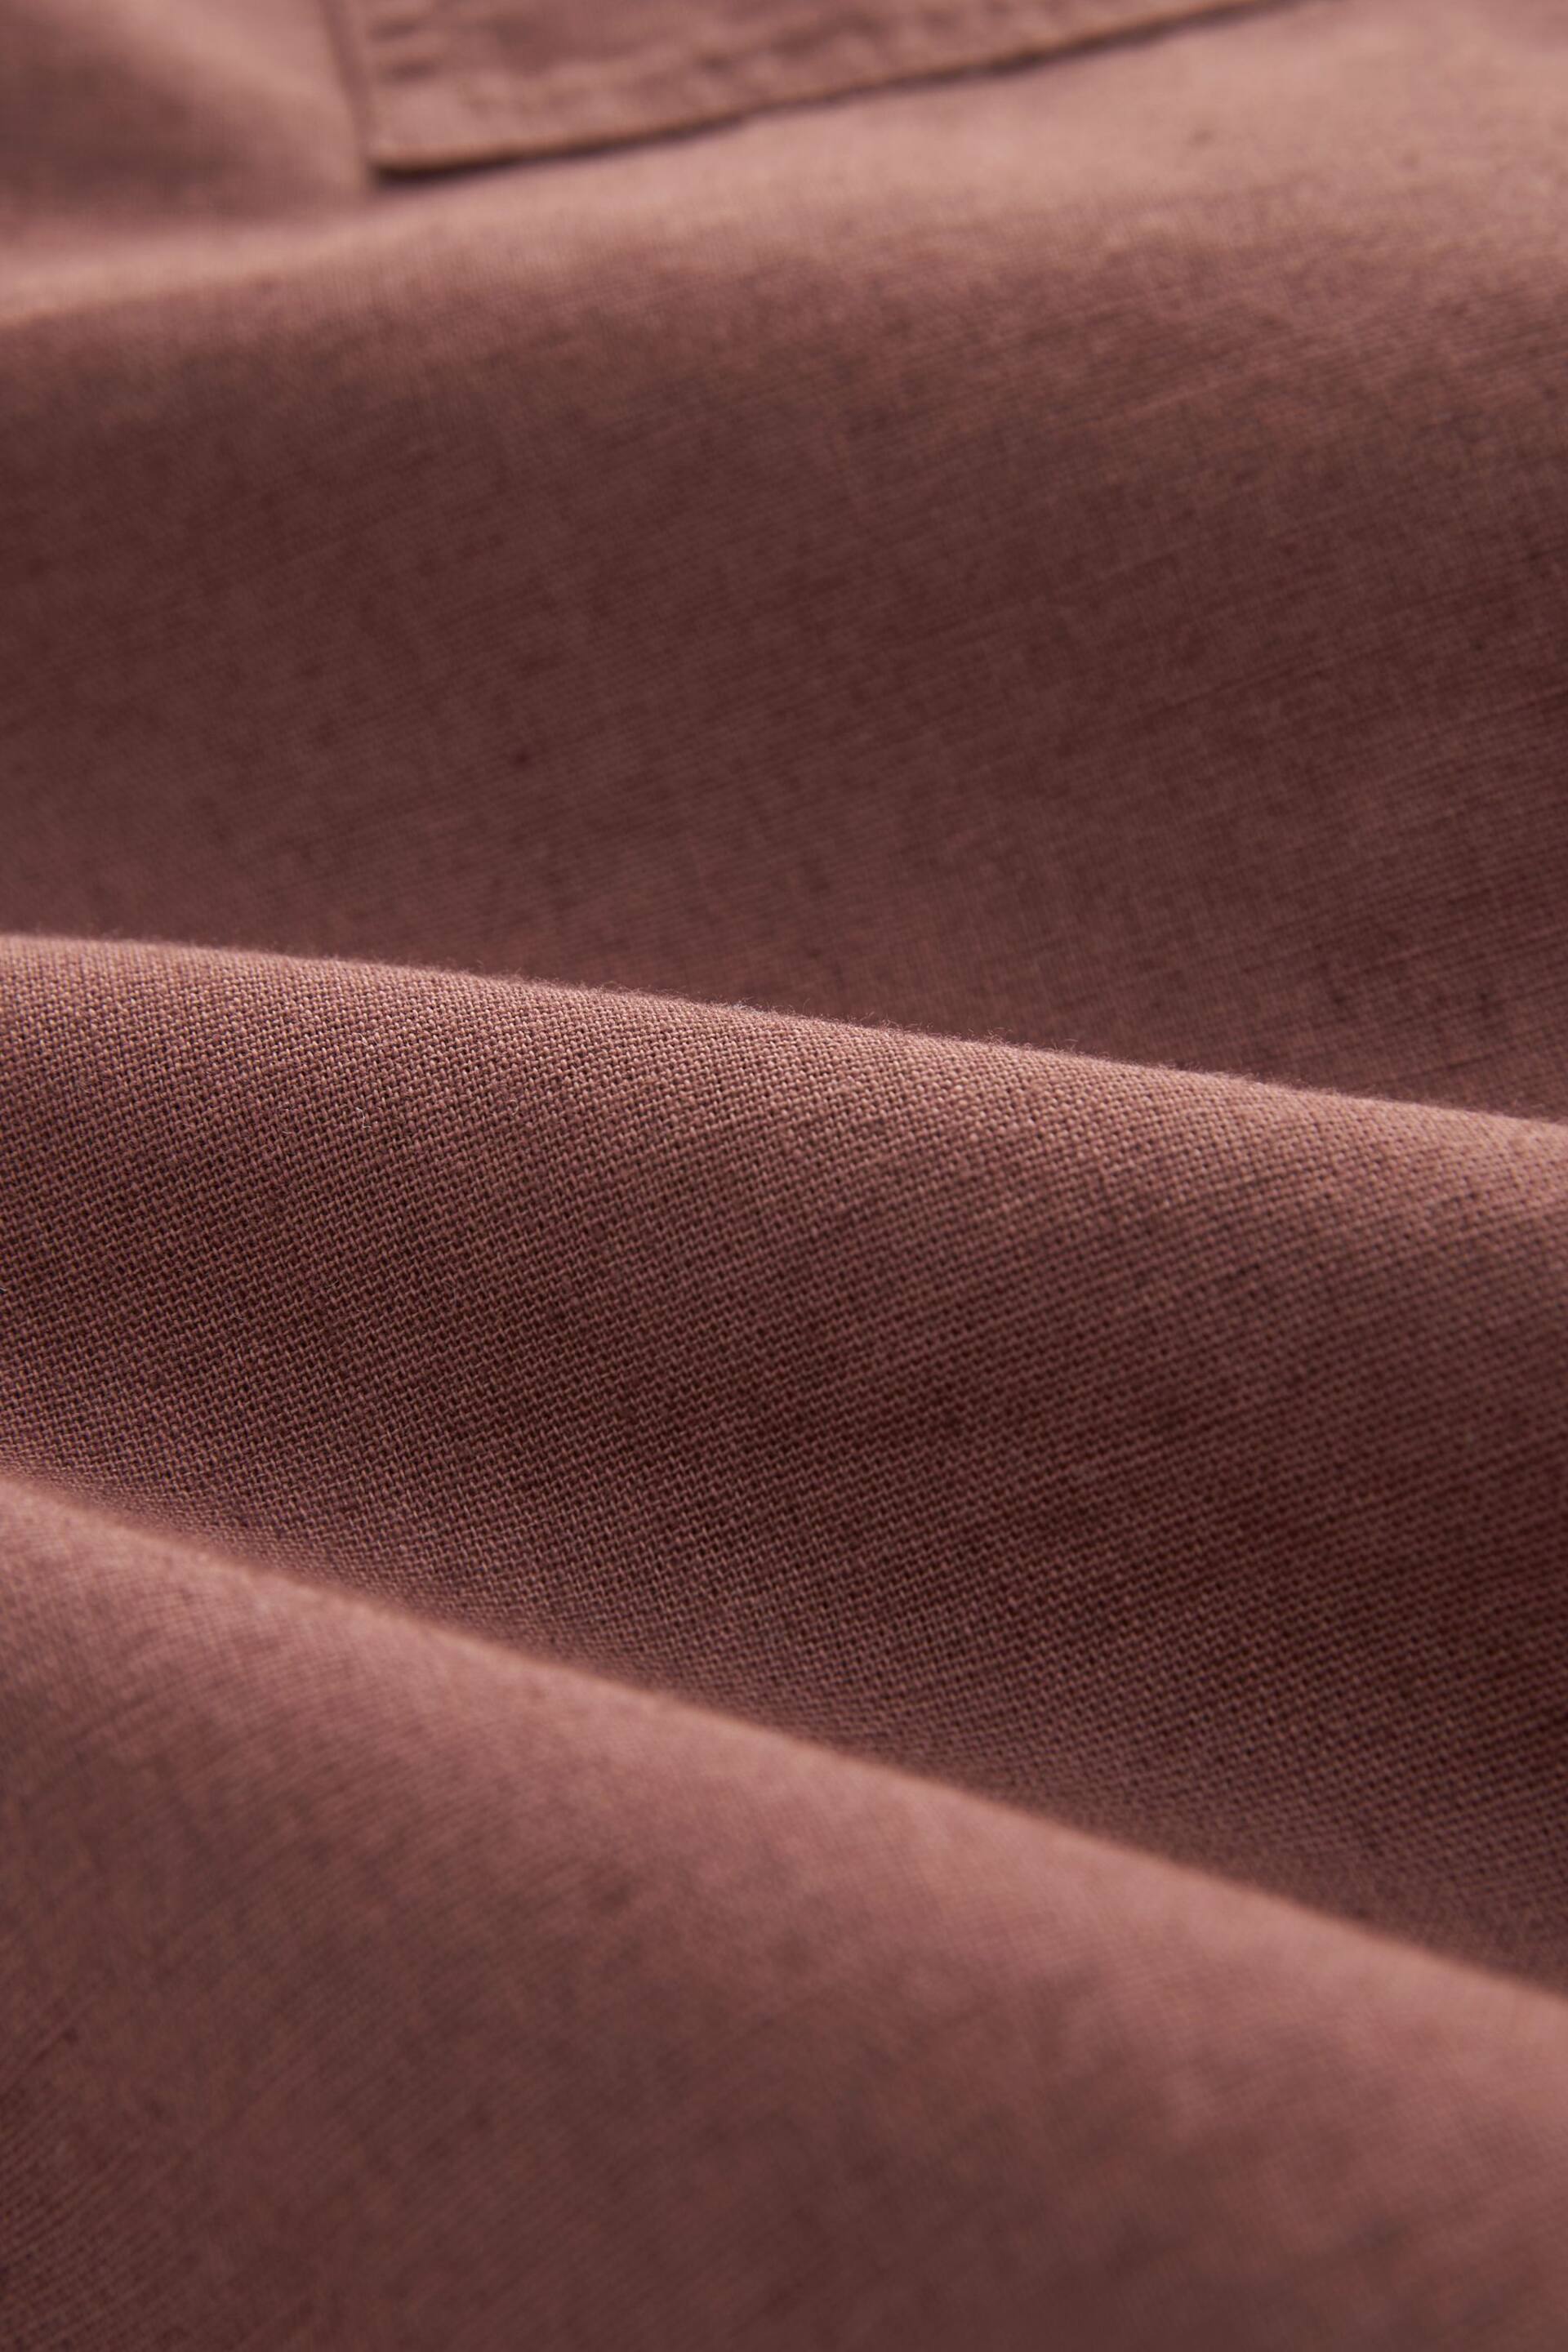 Rust Brown Linen Blend Short Sleeve Shirt with Cuban Collar - Image 9 of 9